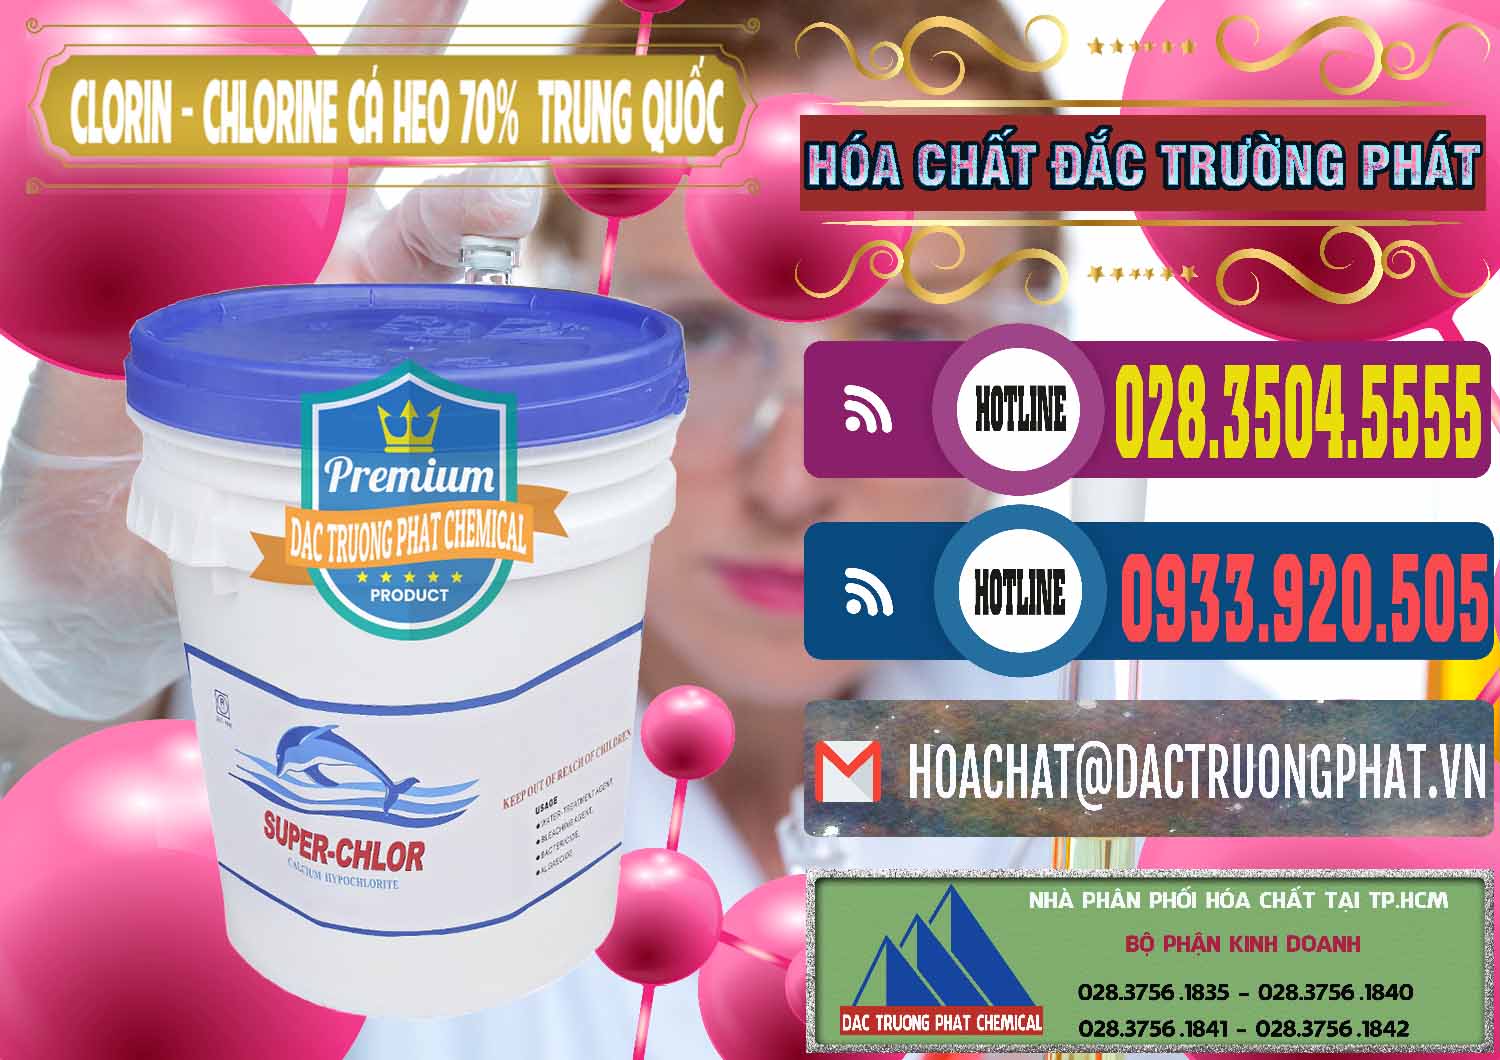 Chuyên bán - phân phối Clorin - Chlorine Cá Heo 70% Super Chlor Nắp Xanh Trung Quốc China - 0209 - Công ty kinh doanh ( cung cấp ) hóa chất tại TP.HCM - muabanhoachat.com.vn